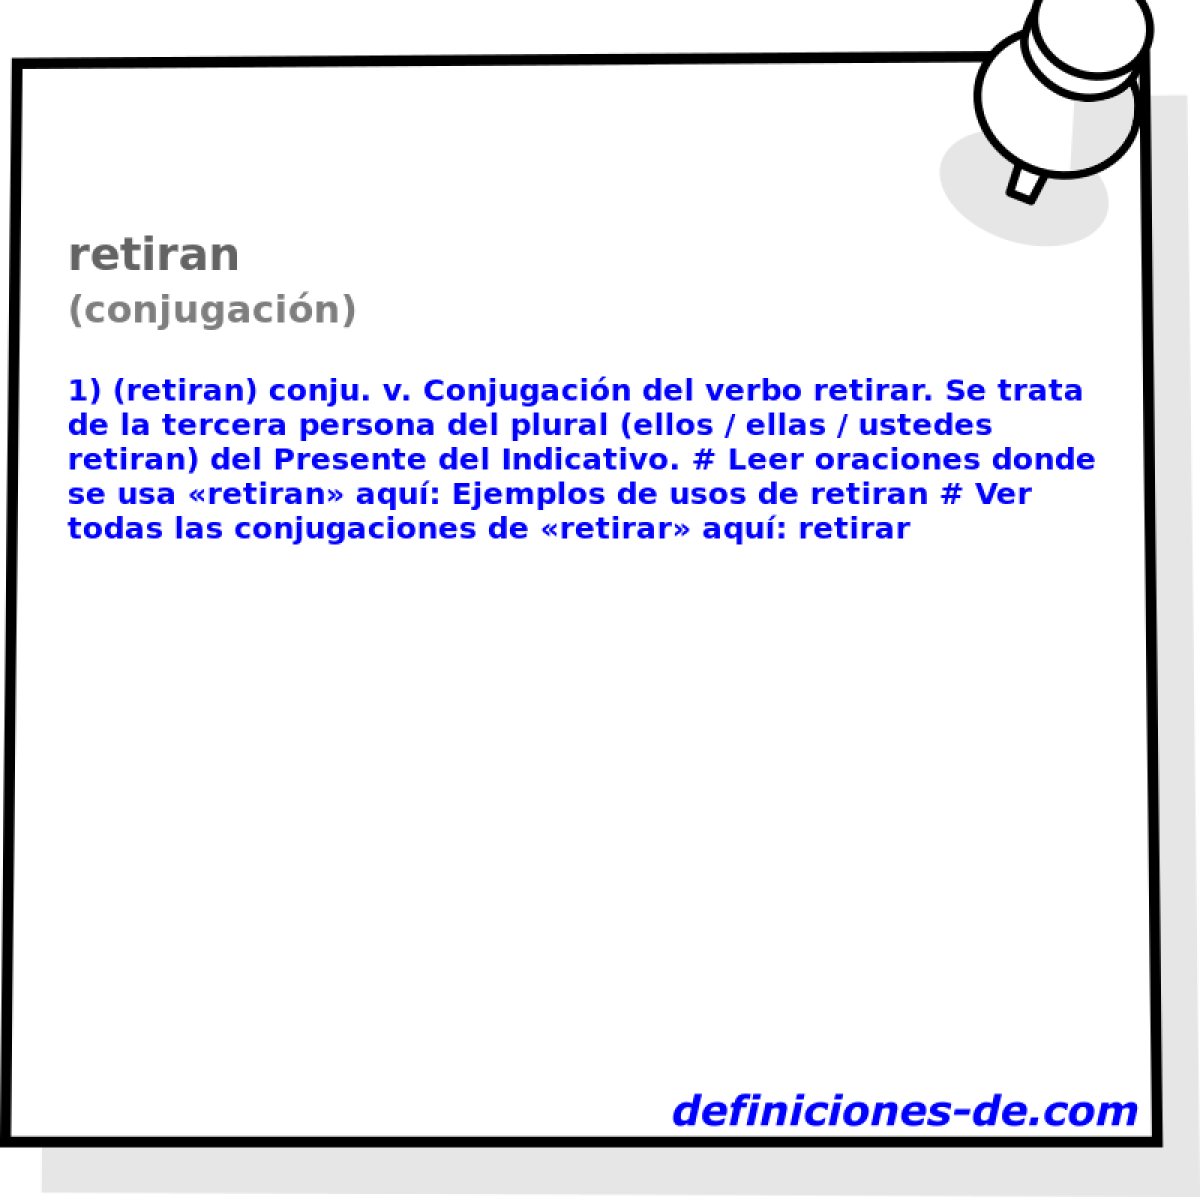 retiran (conjugacin)